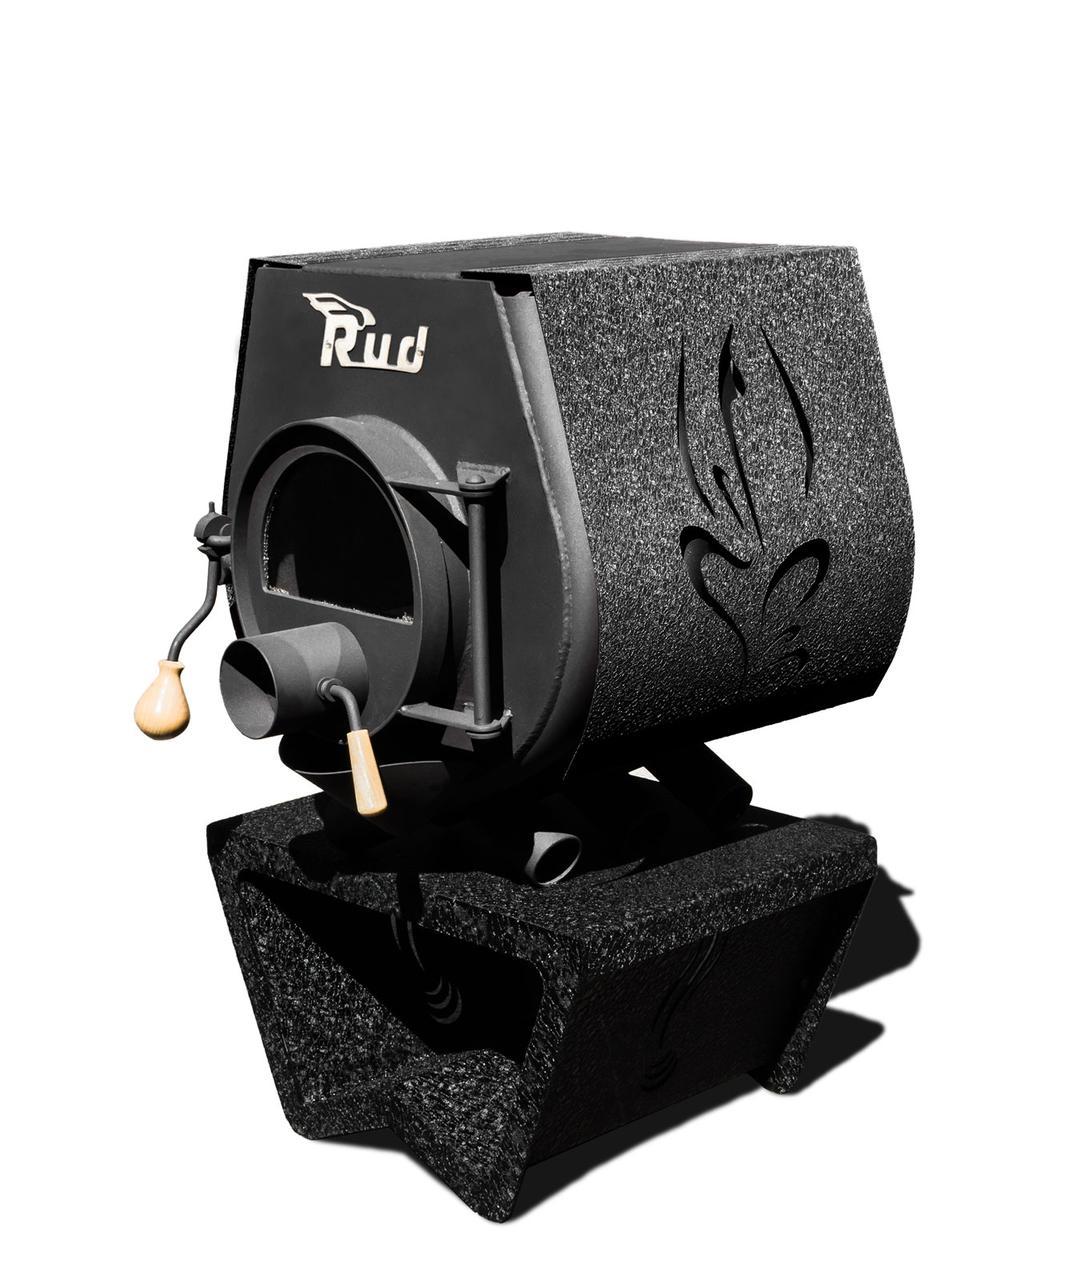 Опалювальна конвекційна піч Rud Pyrotron Кантрі 00 з варильною поверхнею, декоративна обшивка (чорна)